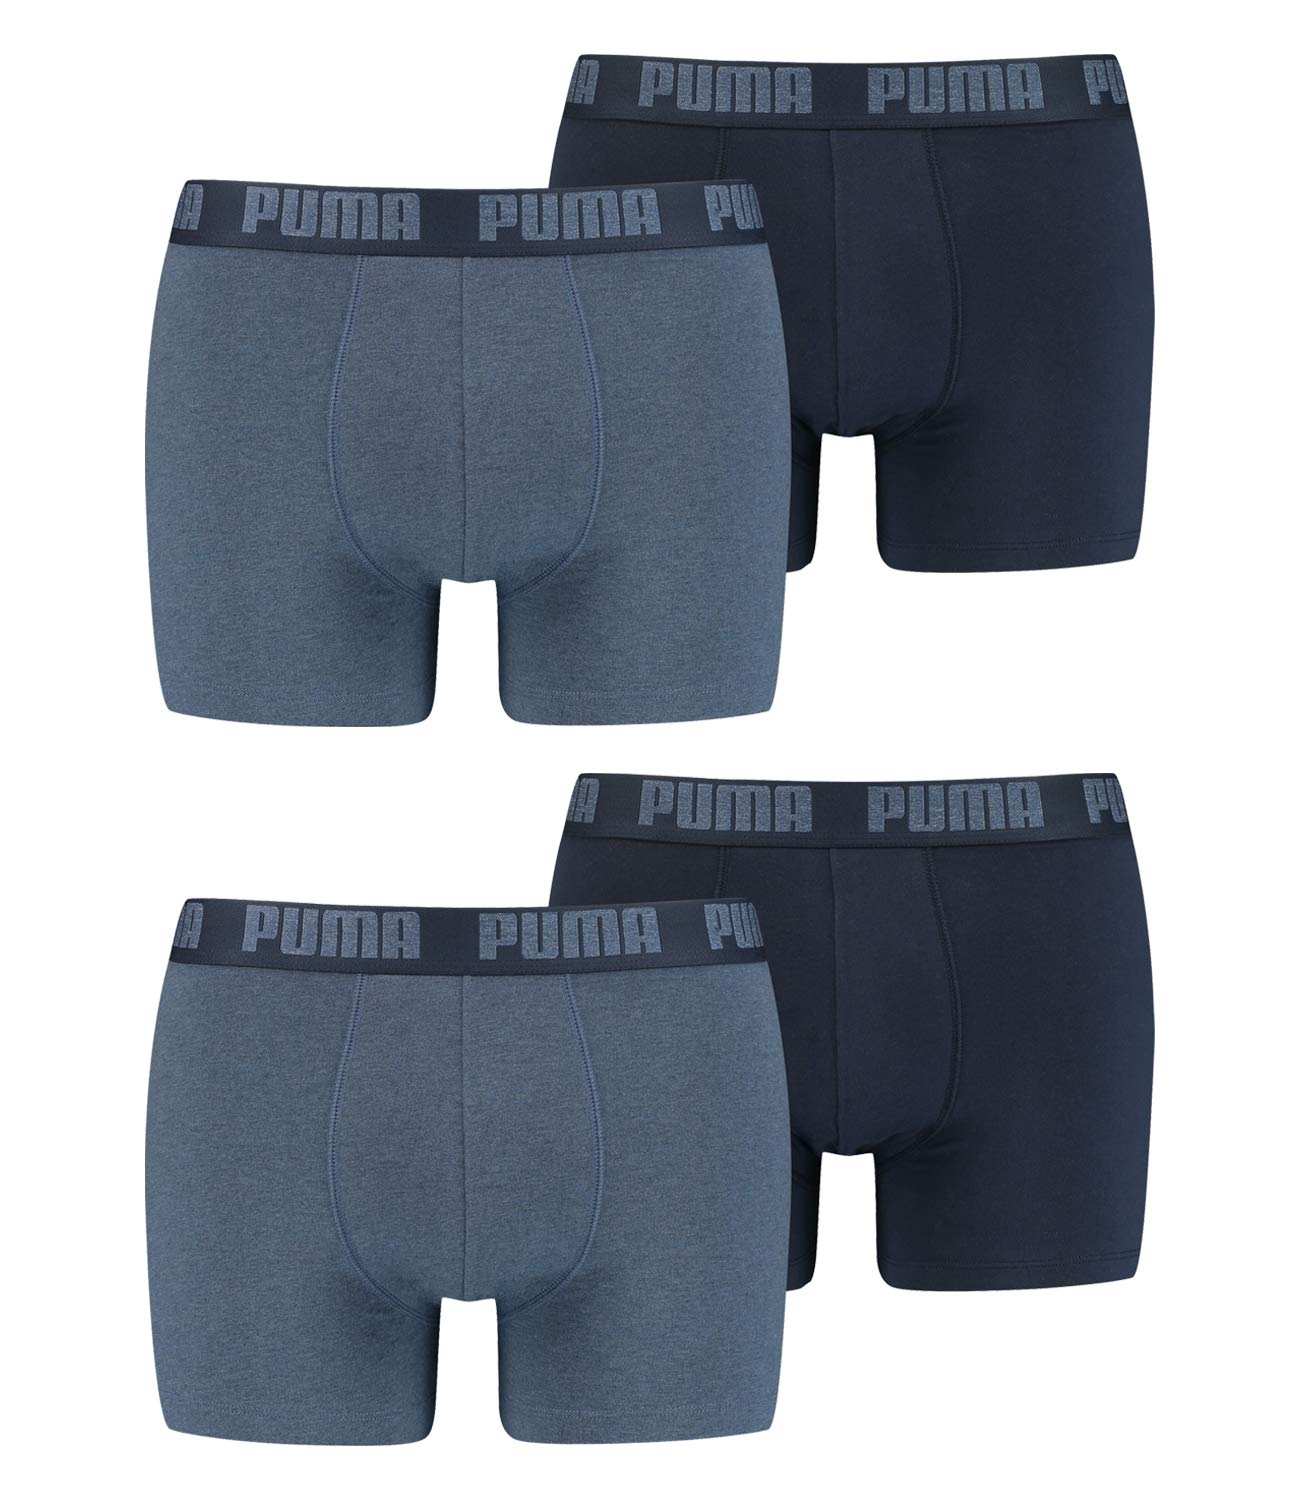 PUMA 4 er Pack Boxer Boxershorts Men Herren Unterhose Pant Unterwäsche, Farbe:037 - Denim, Bekleidungsgröße:XXL